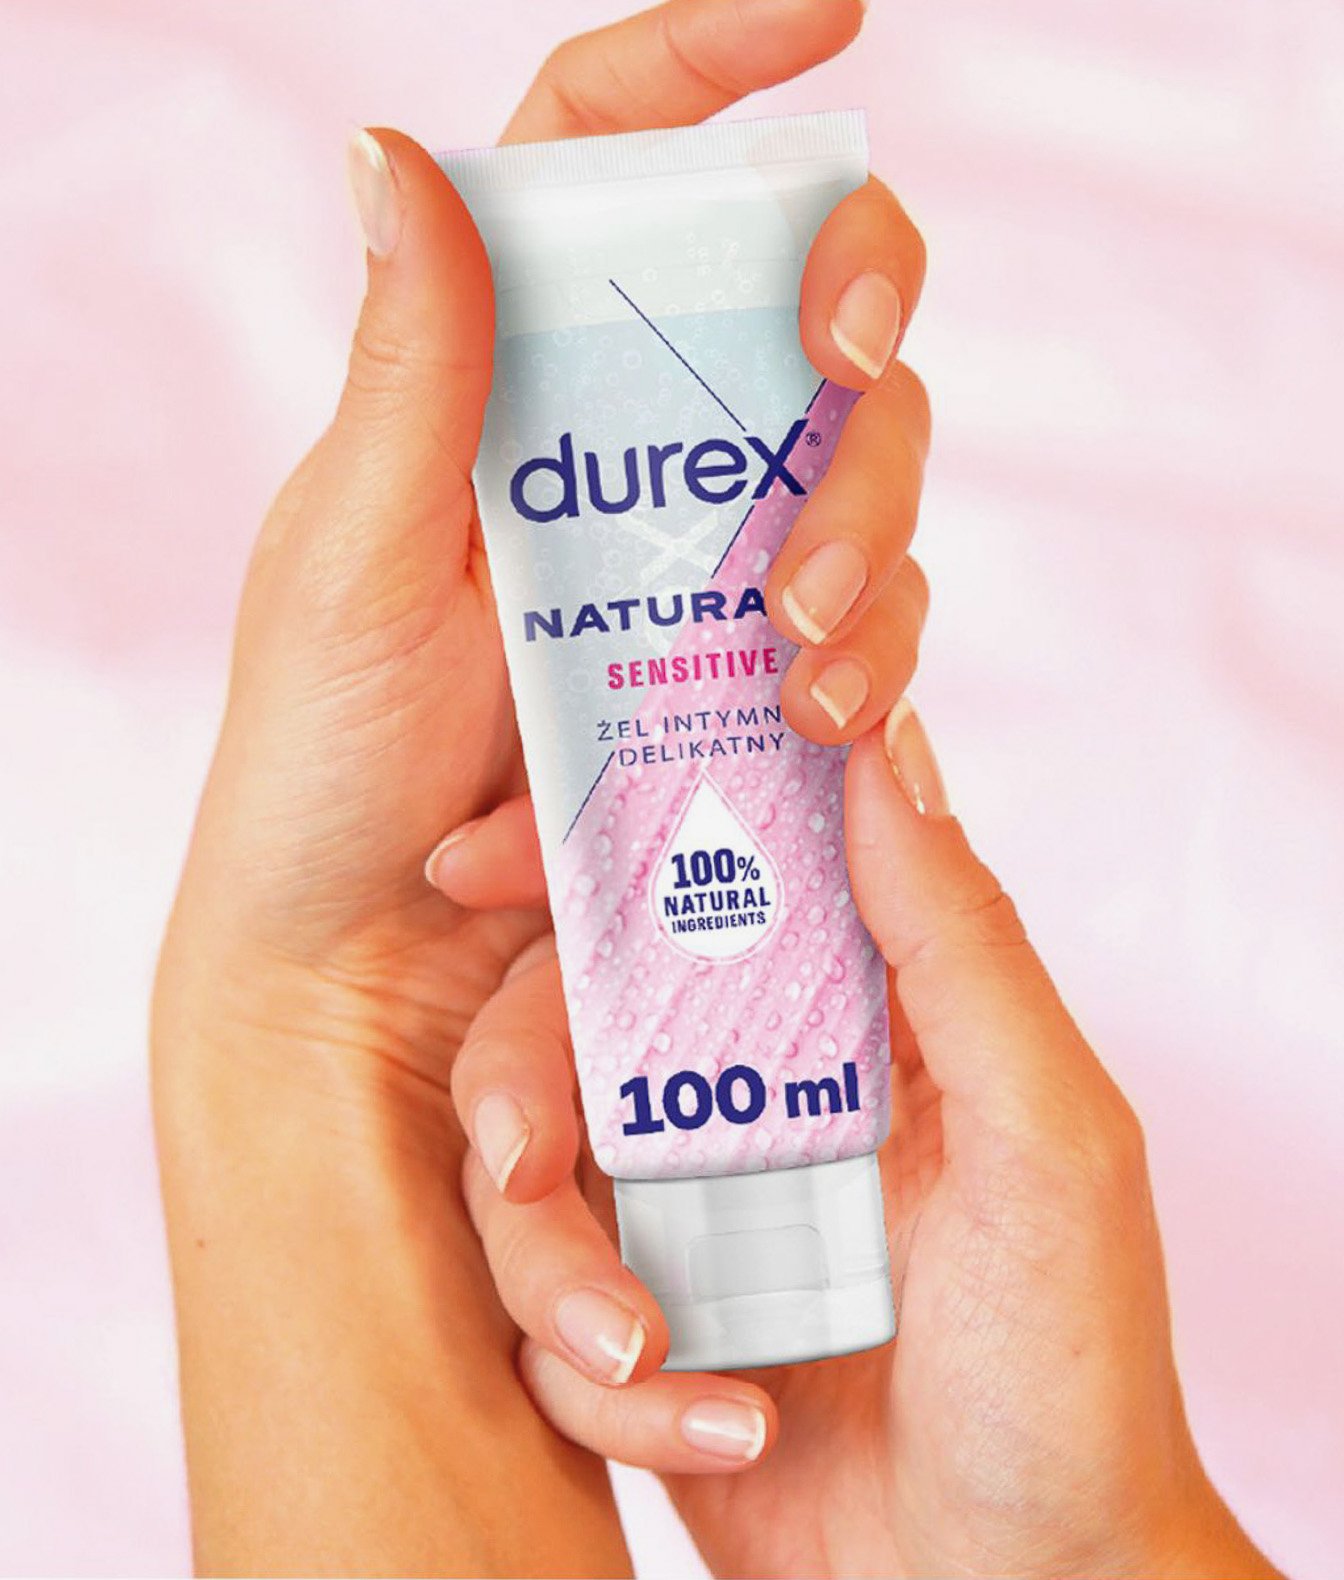 Durex Naturals Sensitive żel intymny